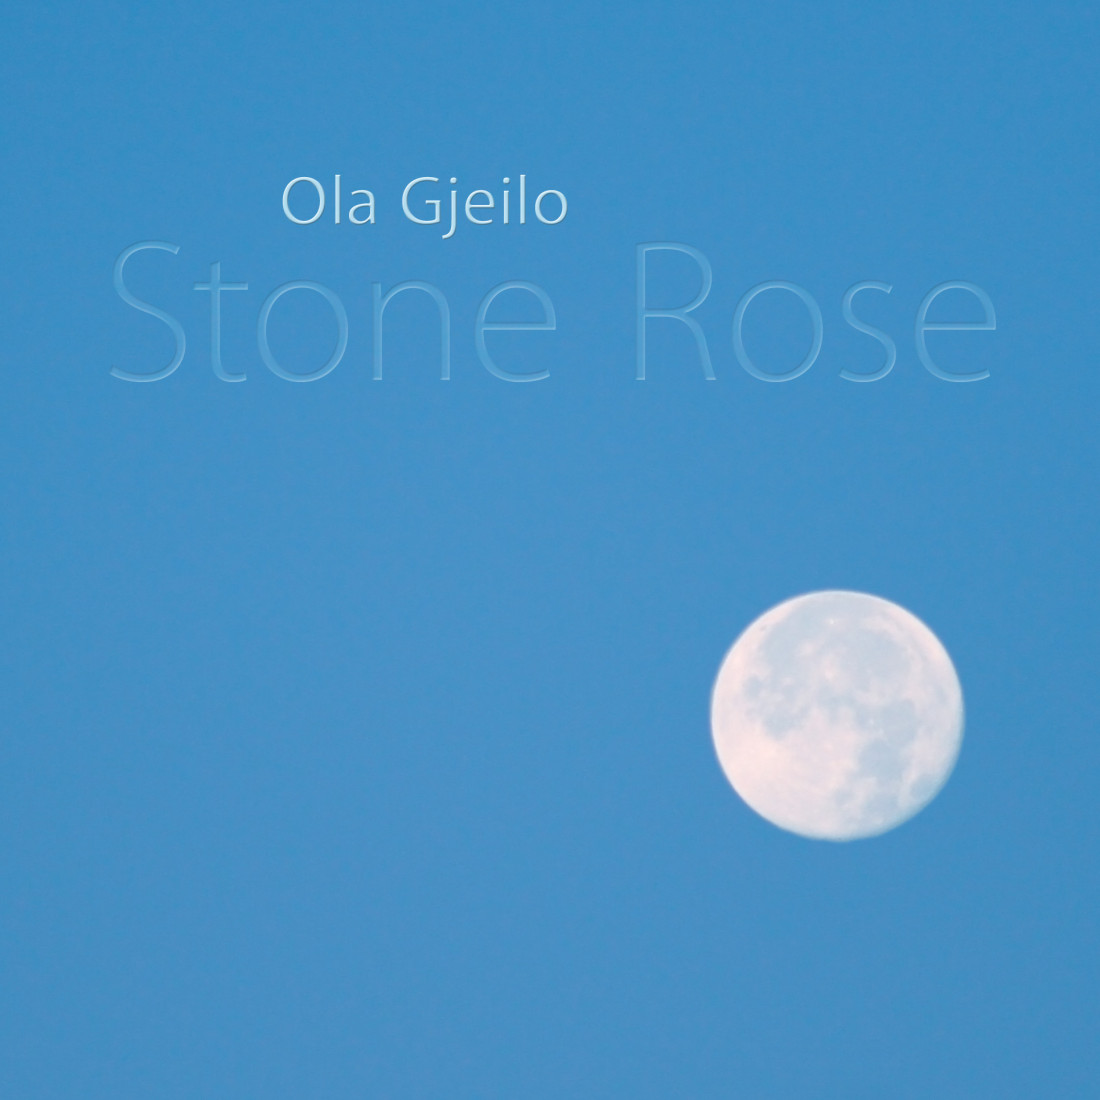 [Ola Gjeilo] The Hudson (Stone Rose) Photo-Image